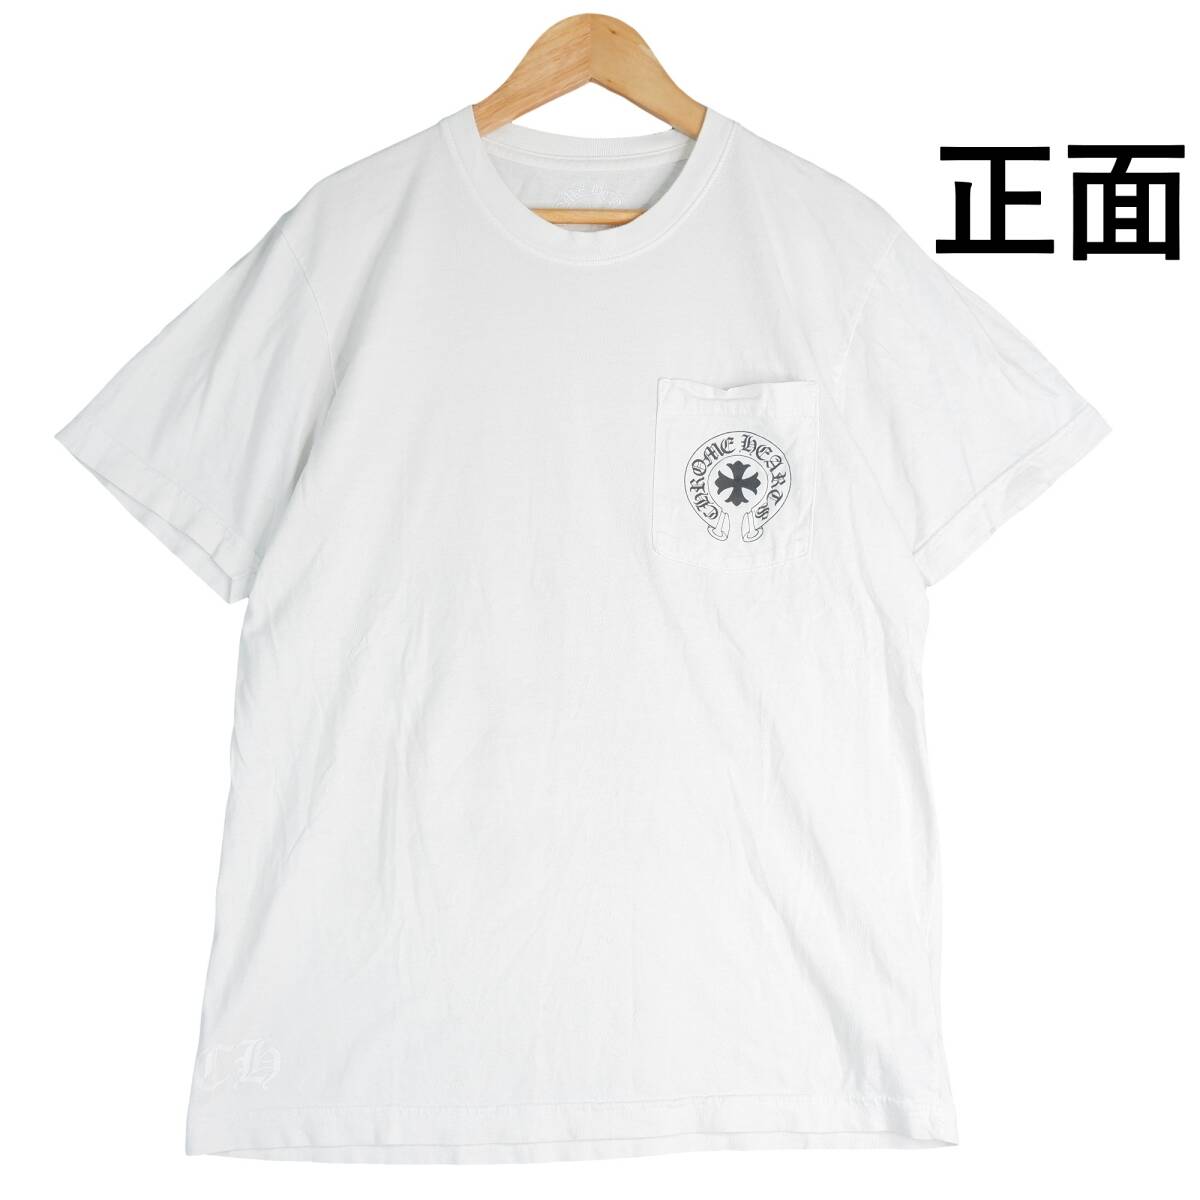 ◆送料無料◆ Chrome Hearts クロムハーツ プリント 半袖 ポケット Tシャツ カットソー 白 ホワイト メンズ M ◆アメリカ製◆ 1514E0